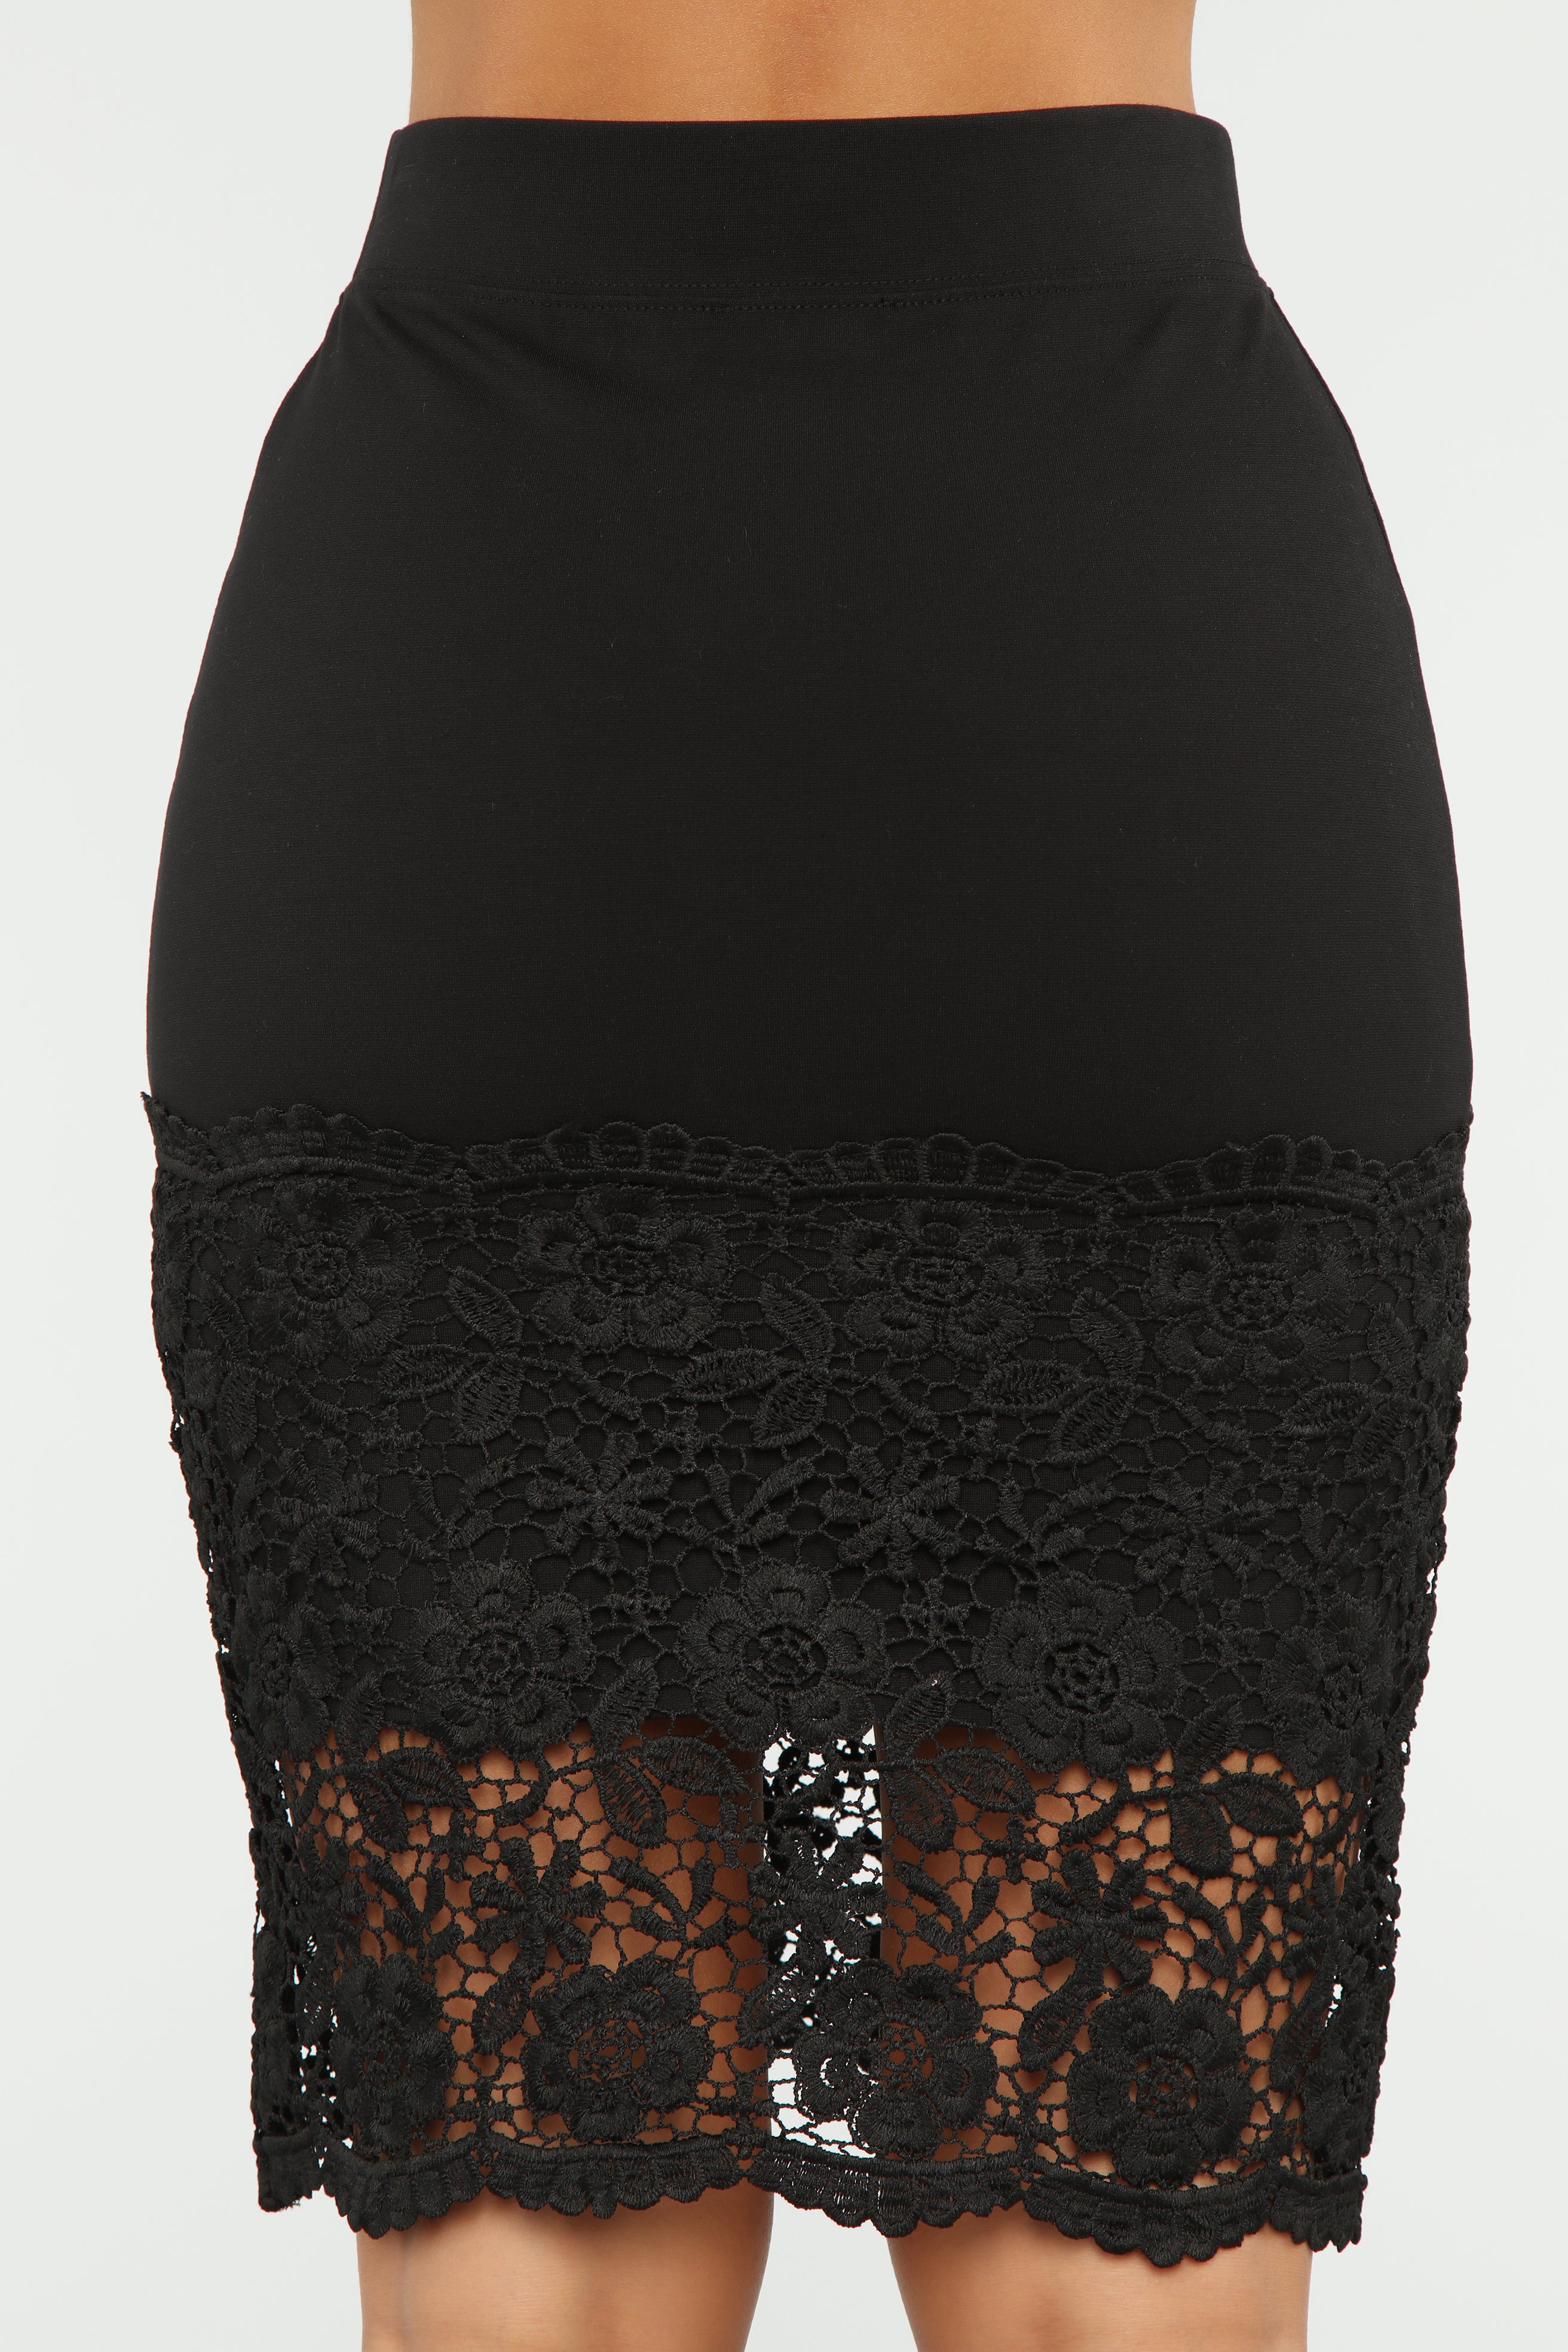 Lace Or Else Skirt - Black – Fashion Nova